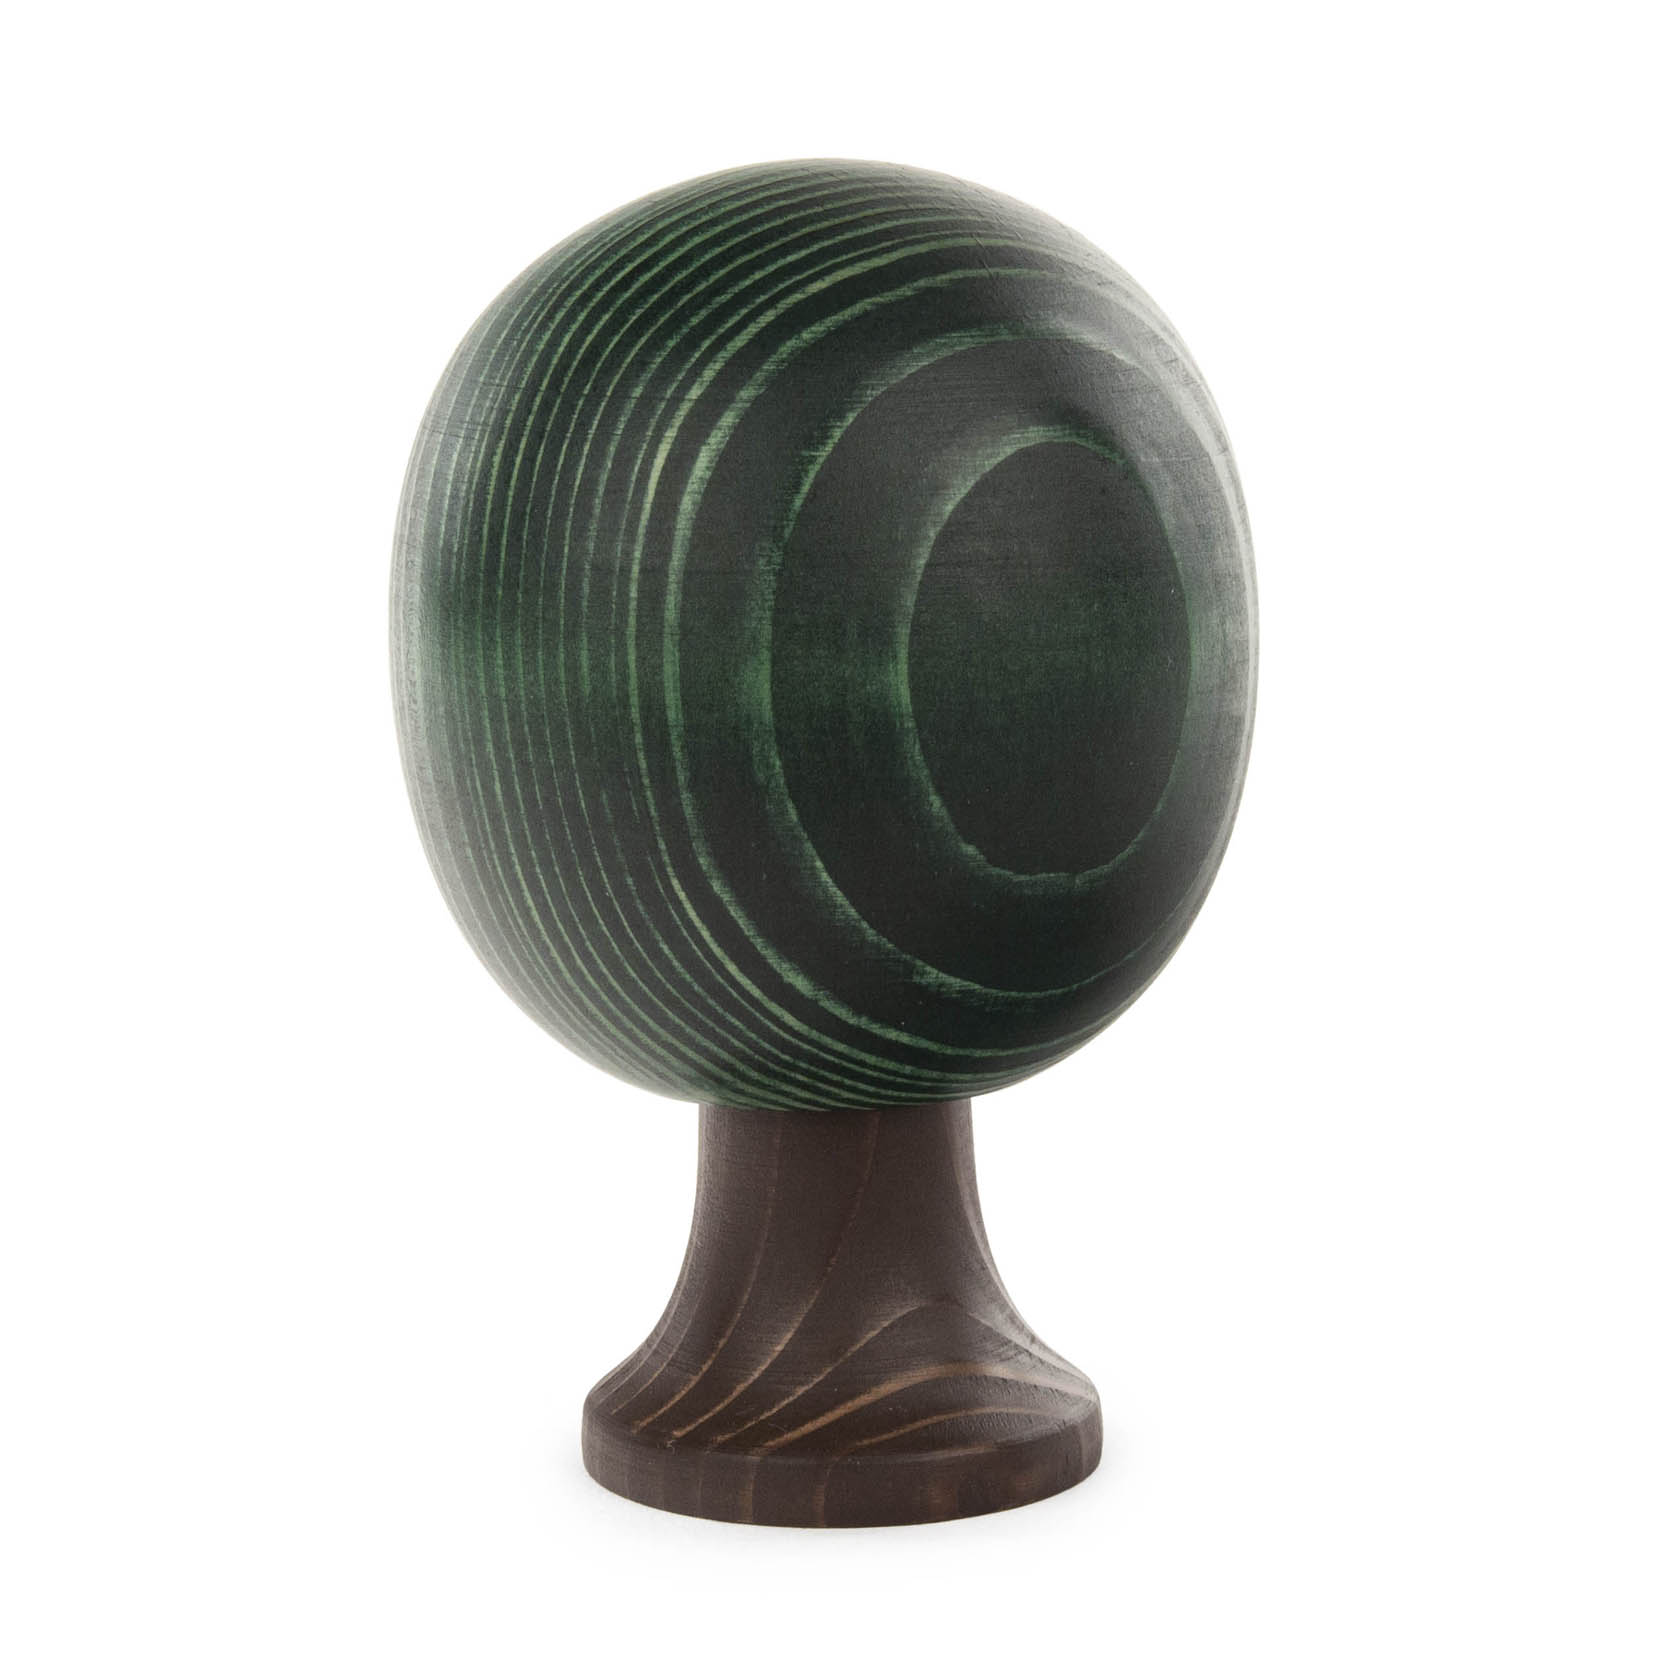 Massivholzbaum runde Form grün 11cm im Dregeno Online Shop günstig kaufen